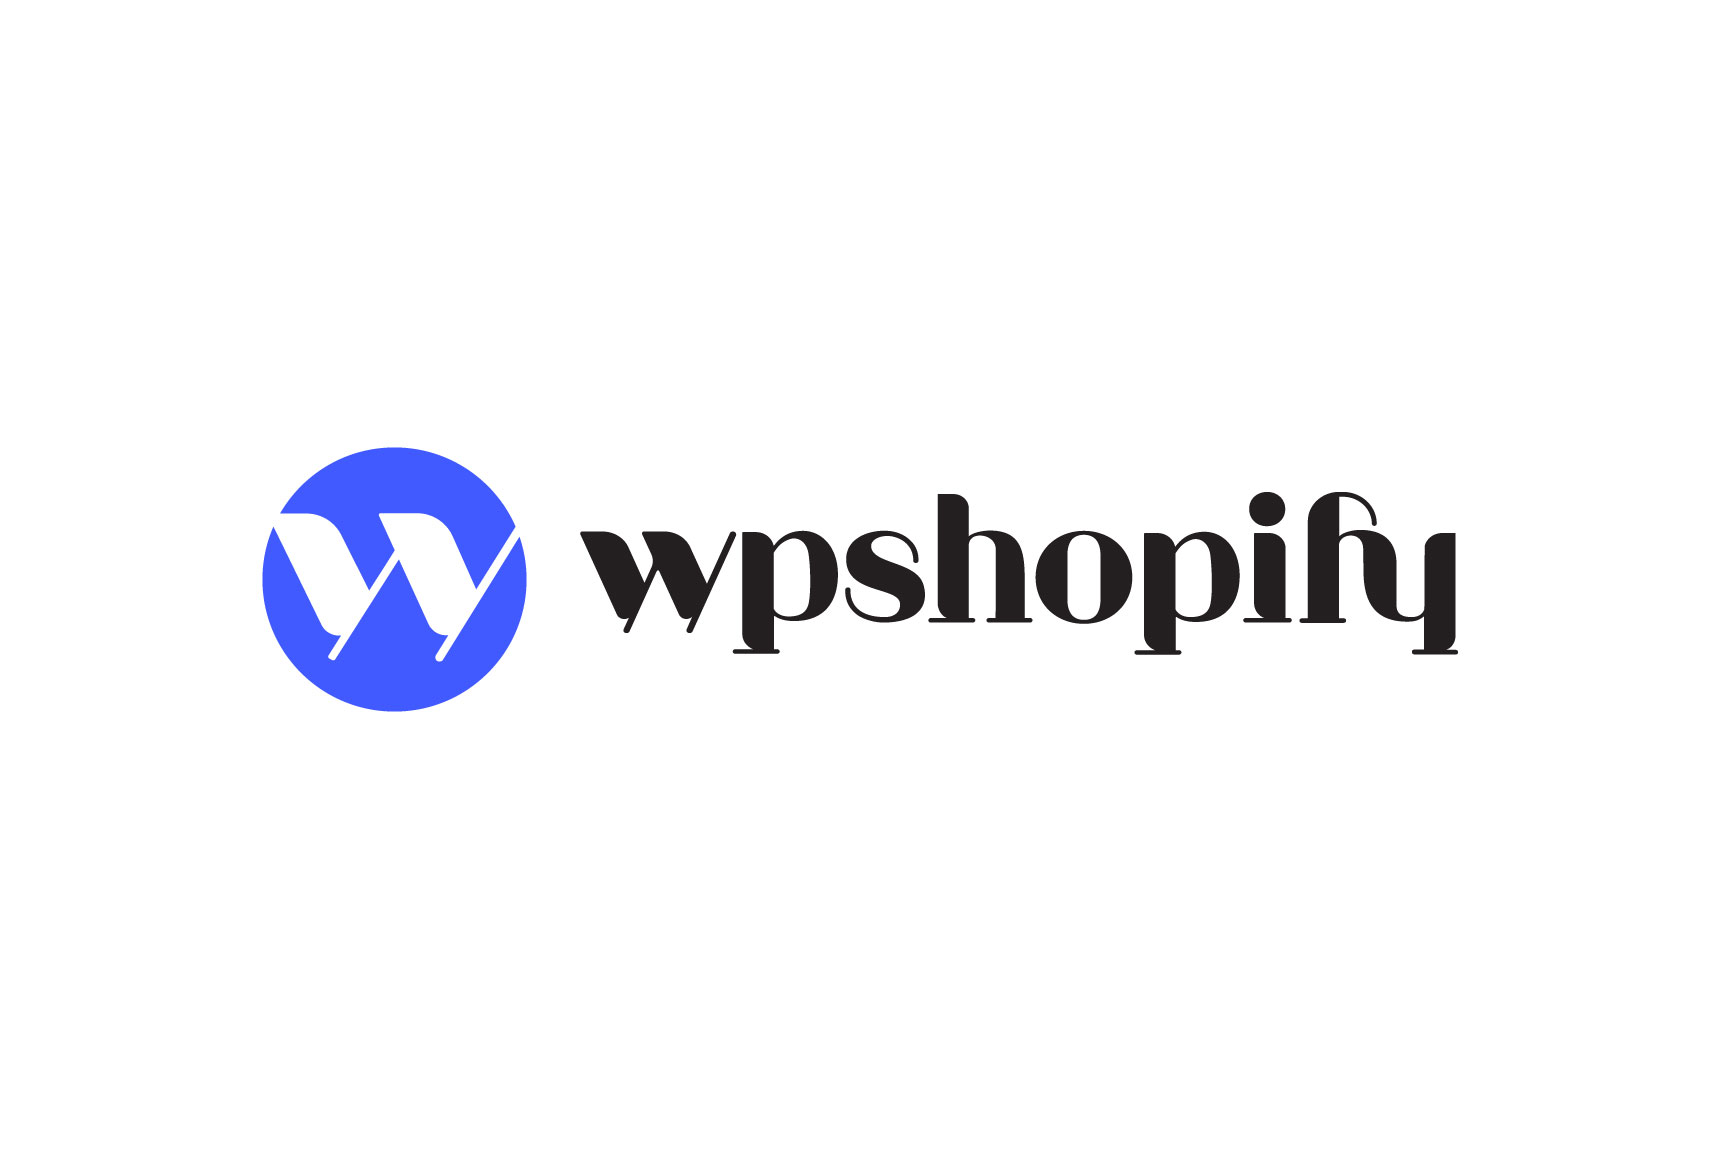 WP Shopify Pro masthead image